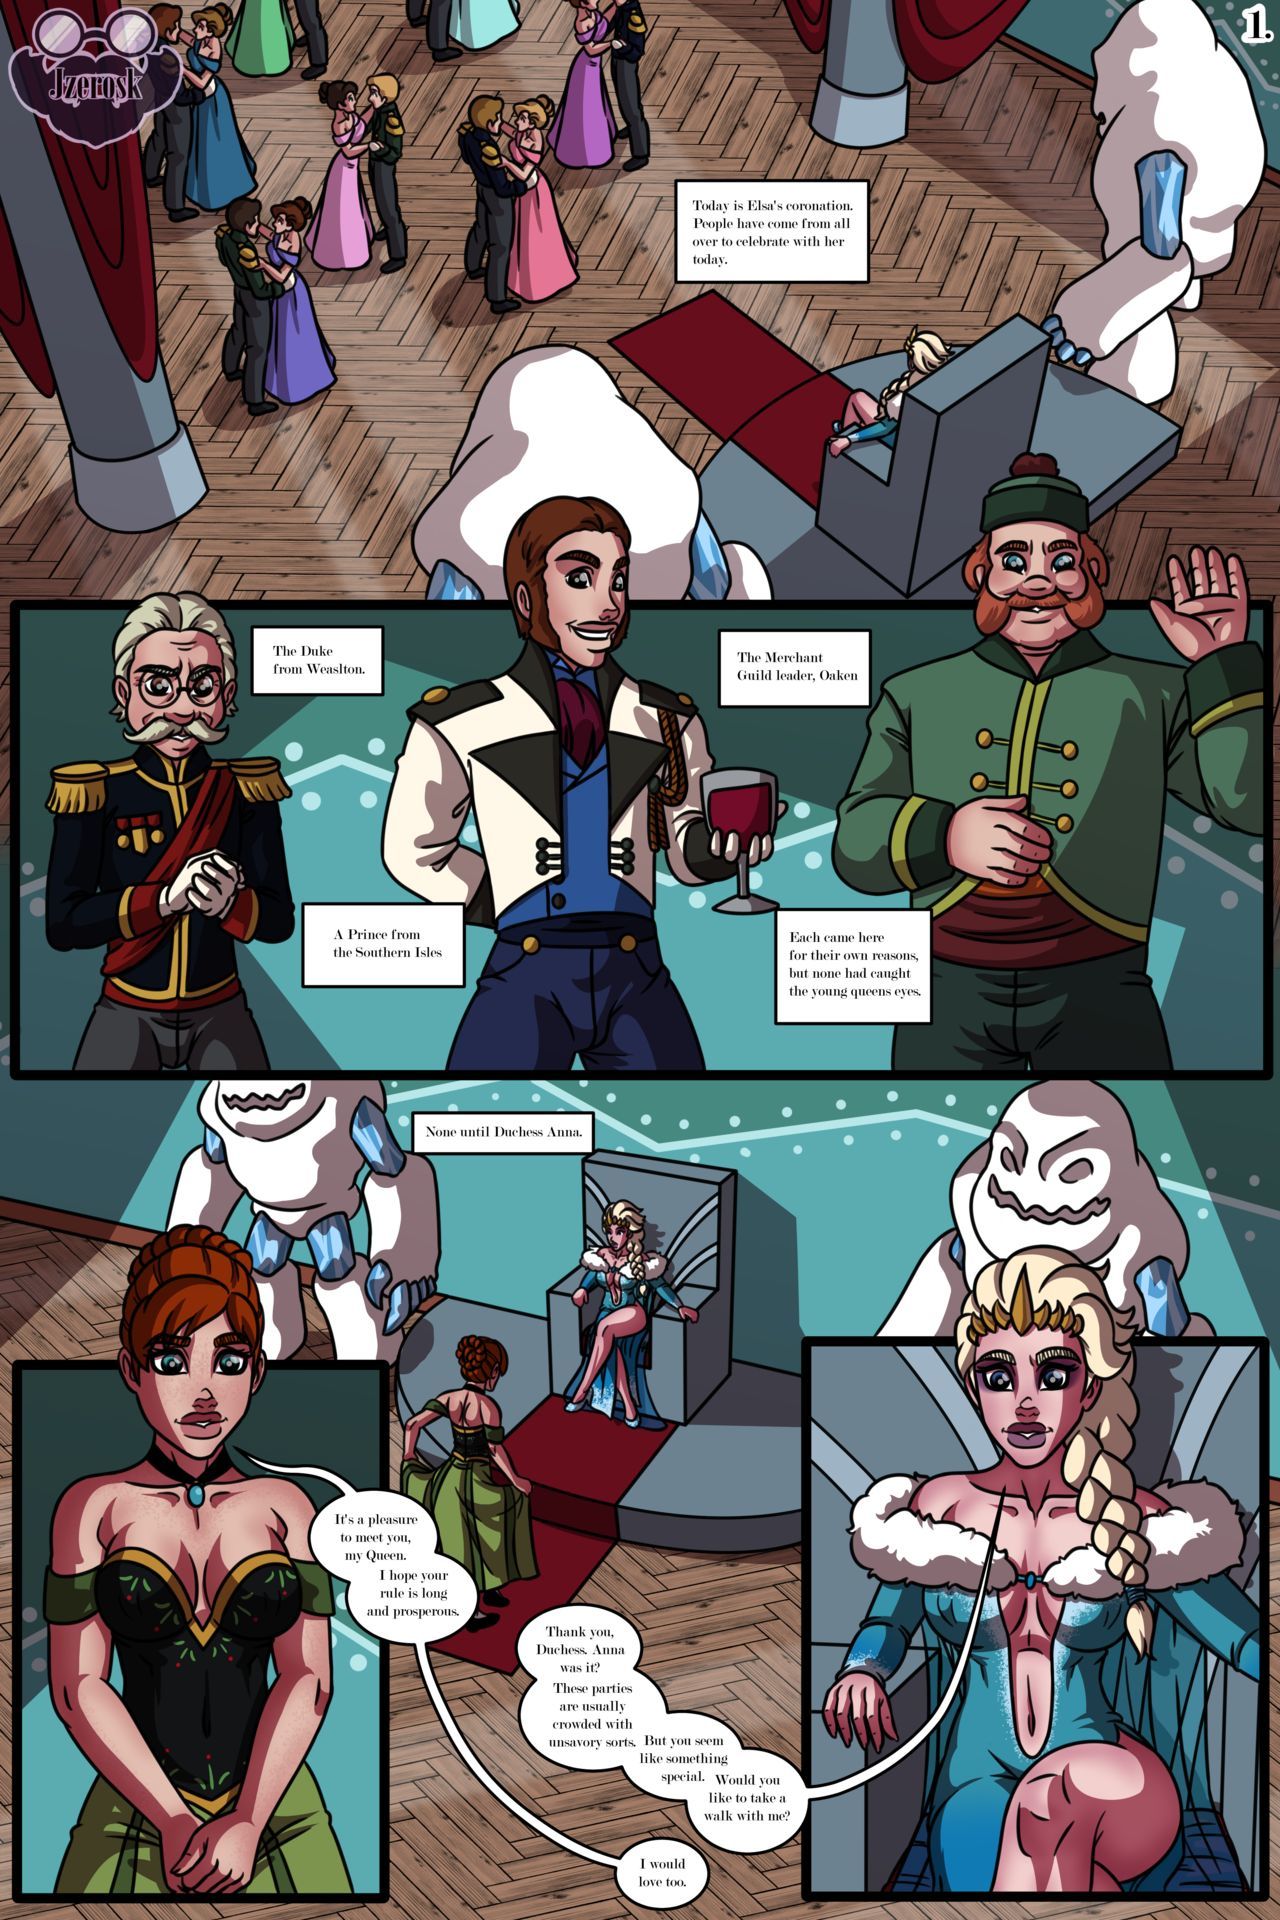 The Queens Affair - JZerosk [Frozen] page 4